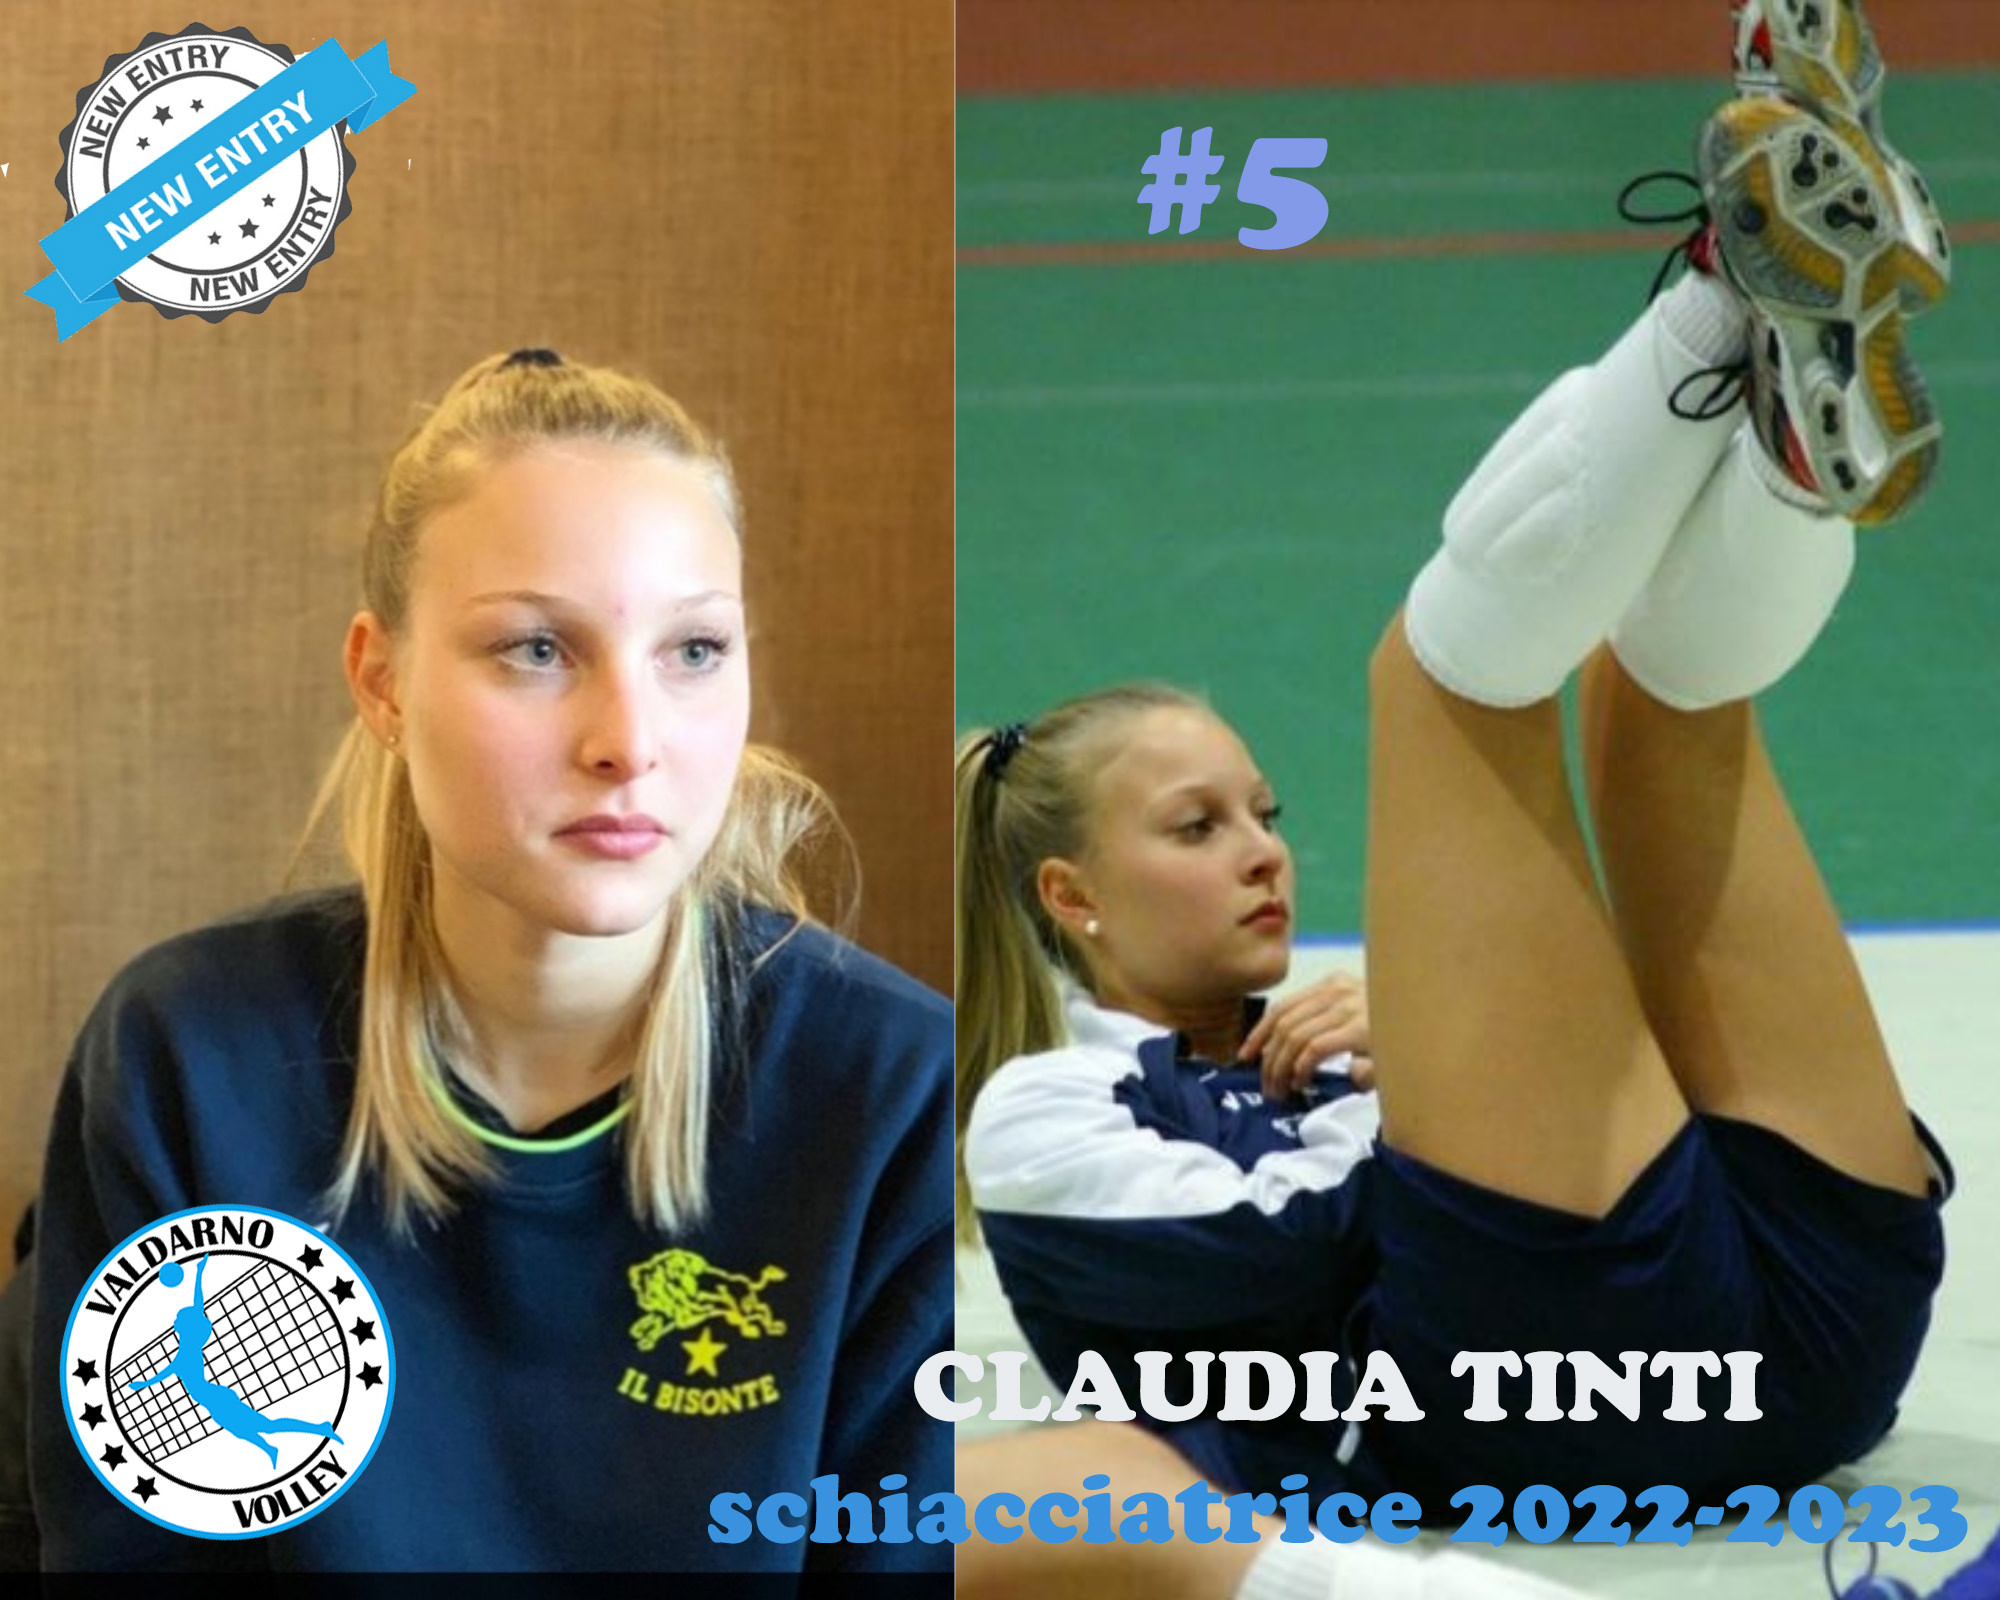 Valdarno Volley - Claudia Tinti